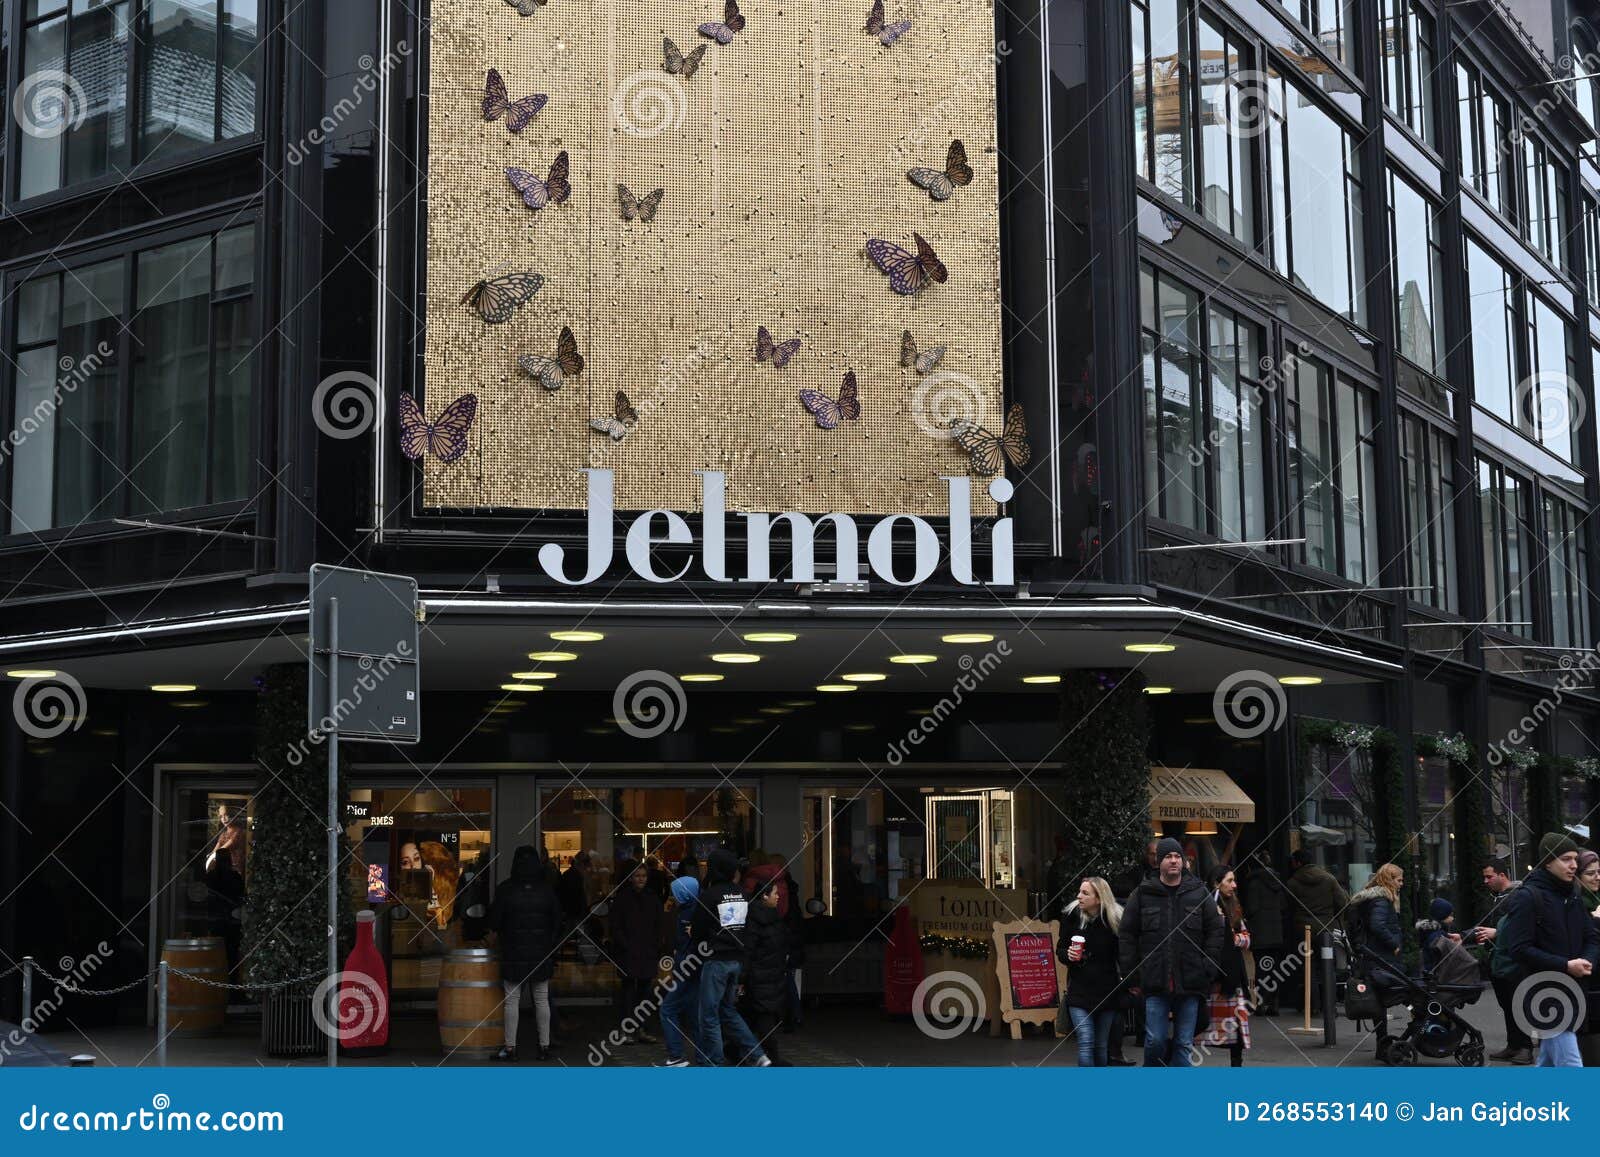 Centro Comercial Jelmoli En El Centro De Zurich Donde Venden Ropa De Diseño  De Lujo. Imagen editorial - Imagen de regalos, cartelera: 268553140